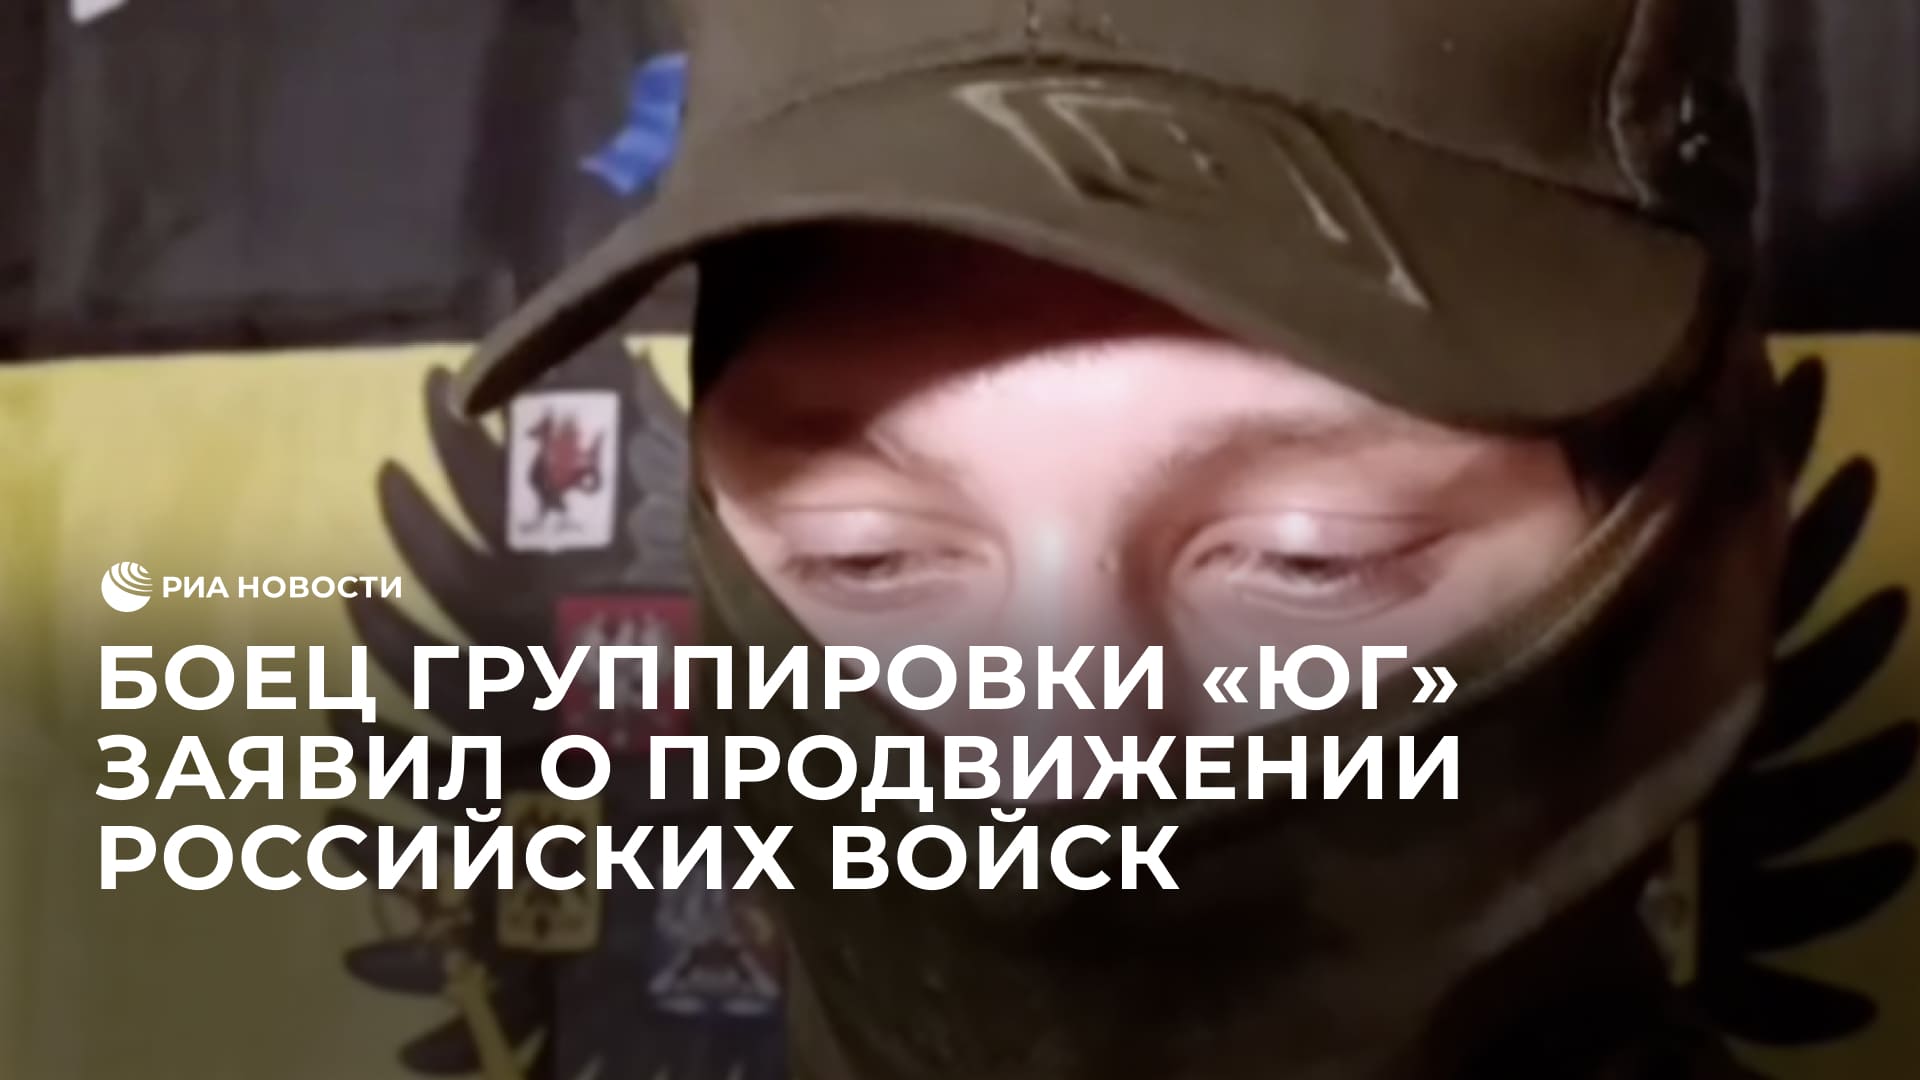 Боец группировки "Юг" заявил о продвижении российских войск